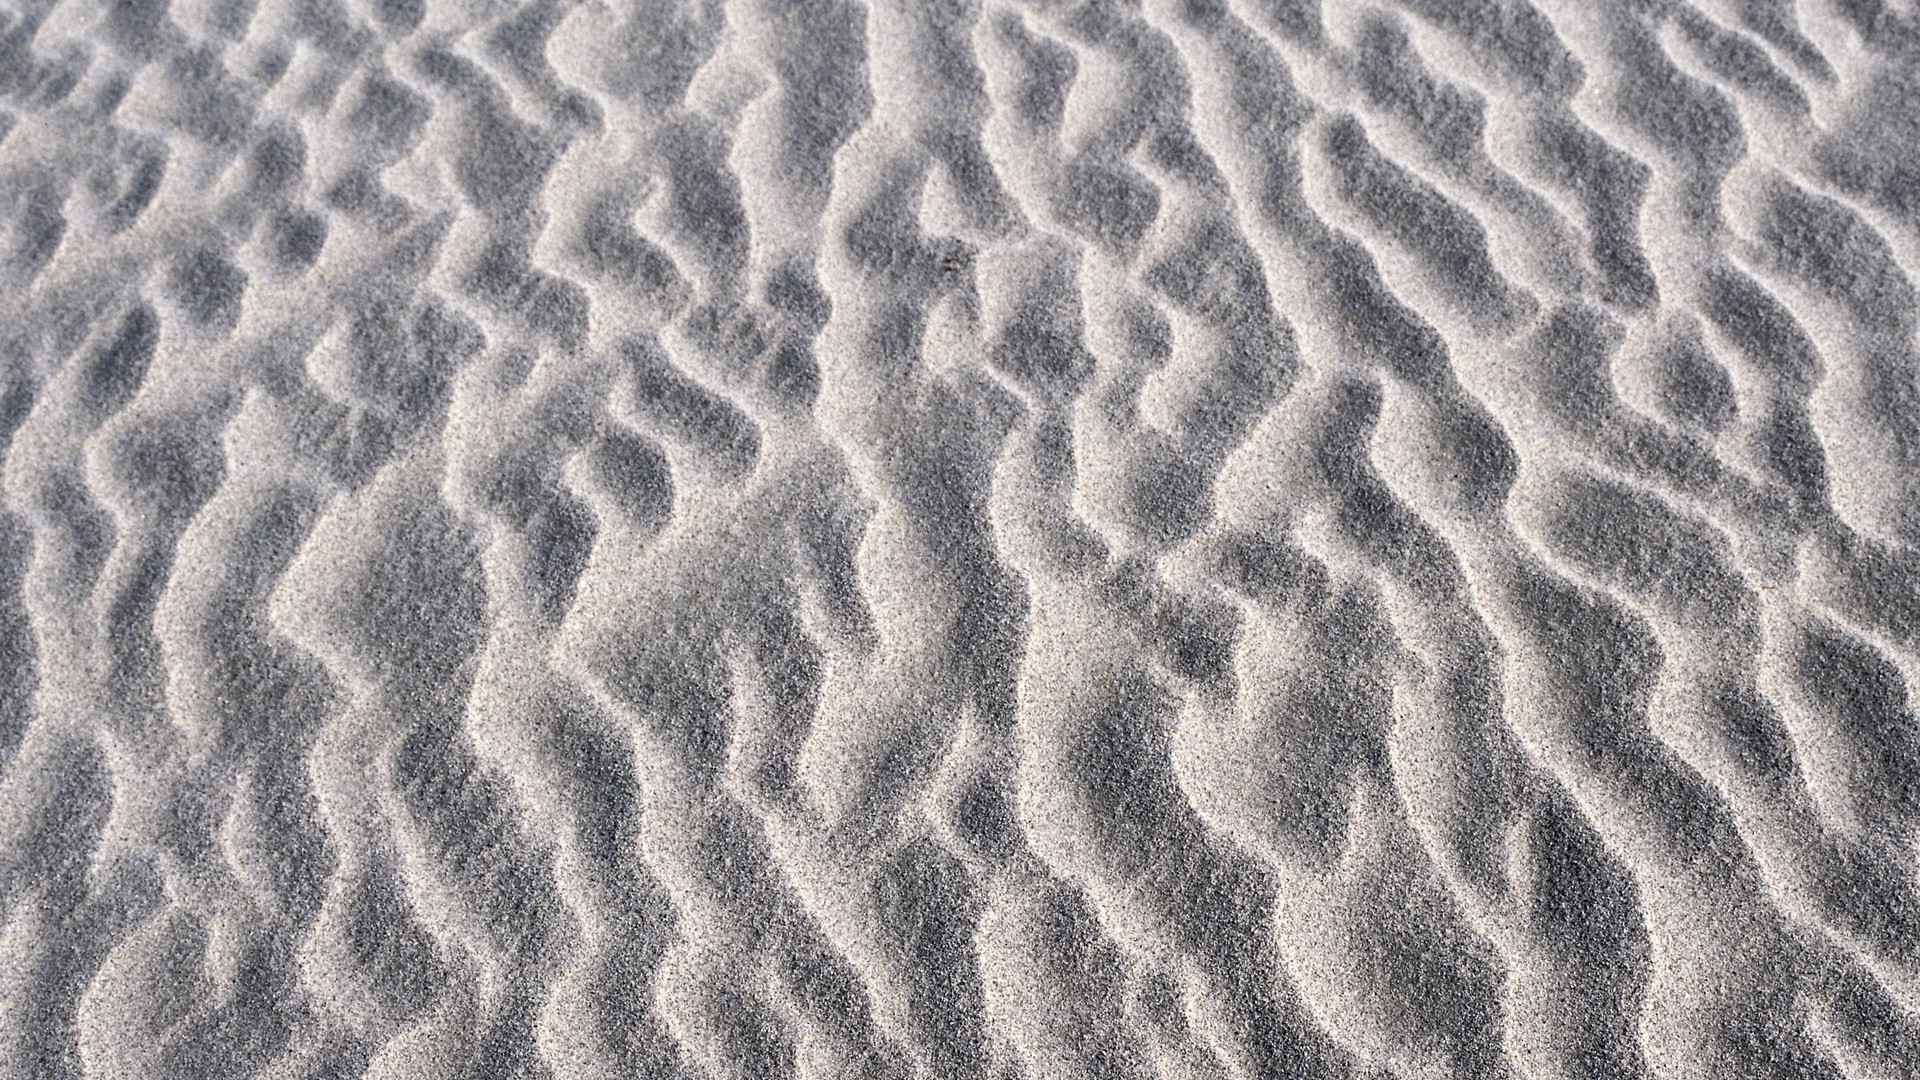 Sand computer wallpaper